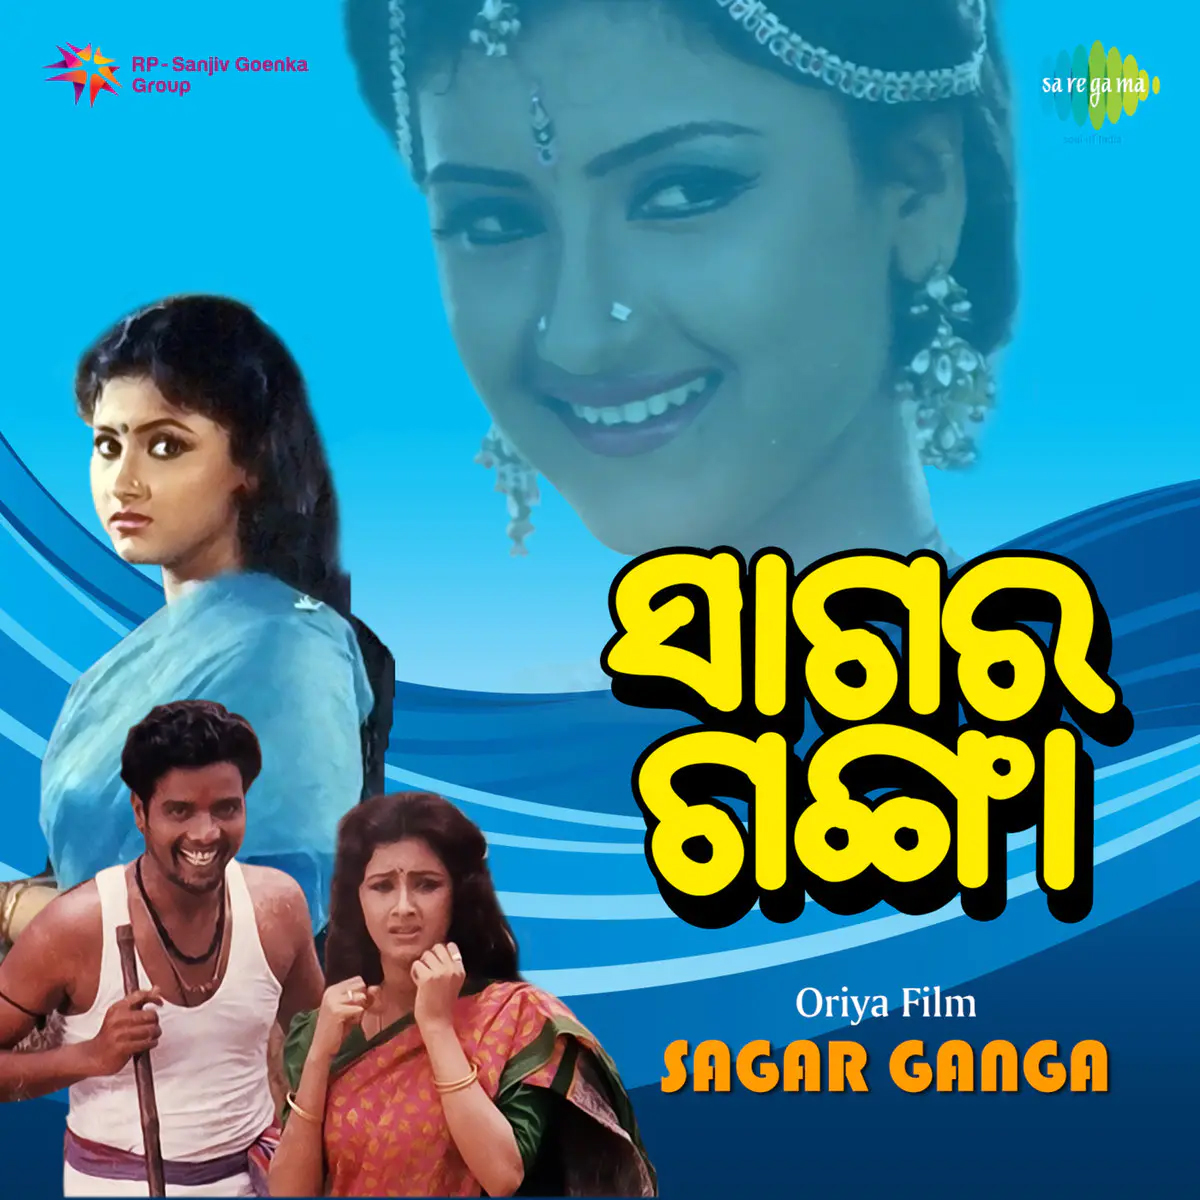 'Sagar Ganga' audio artwork